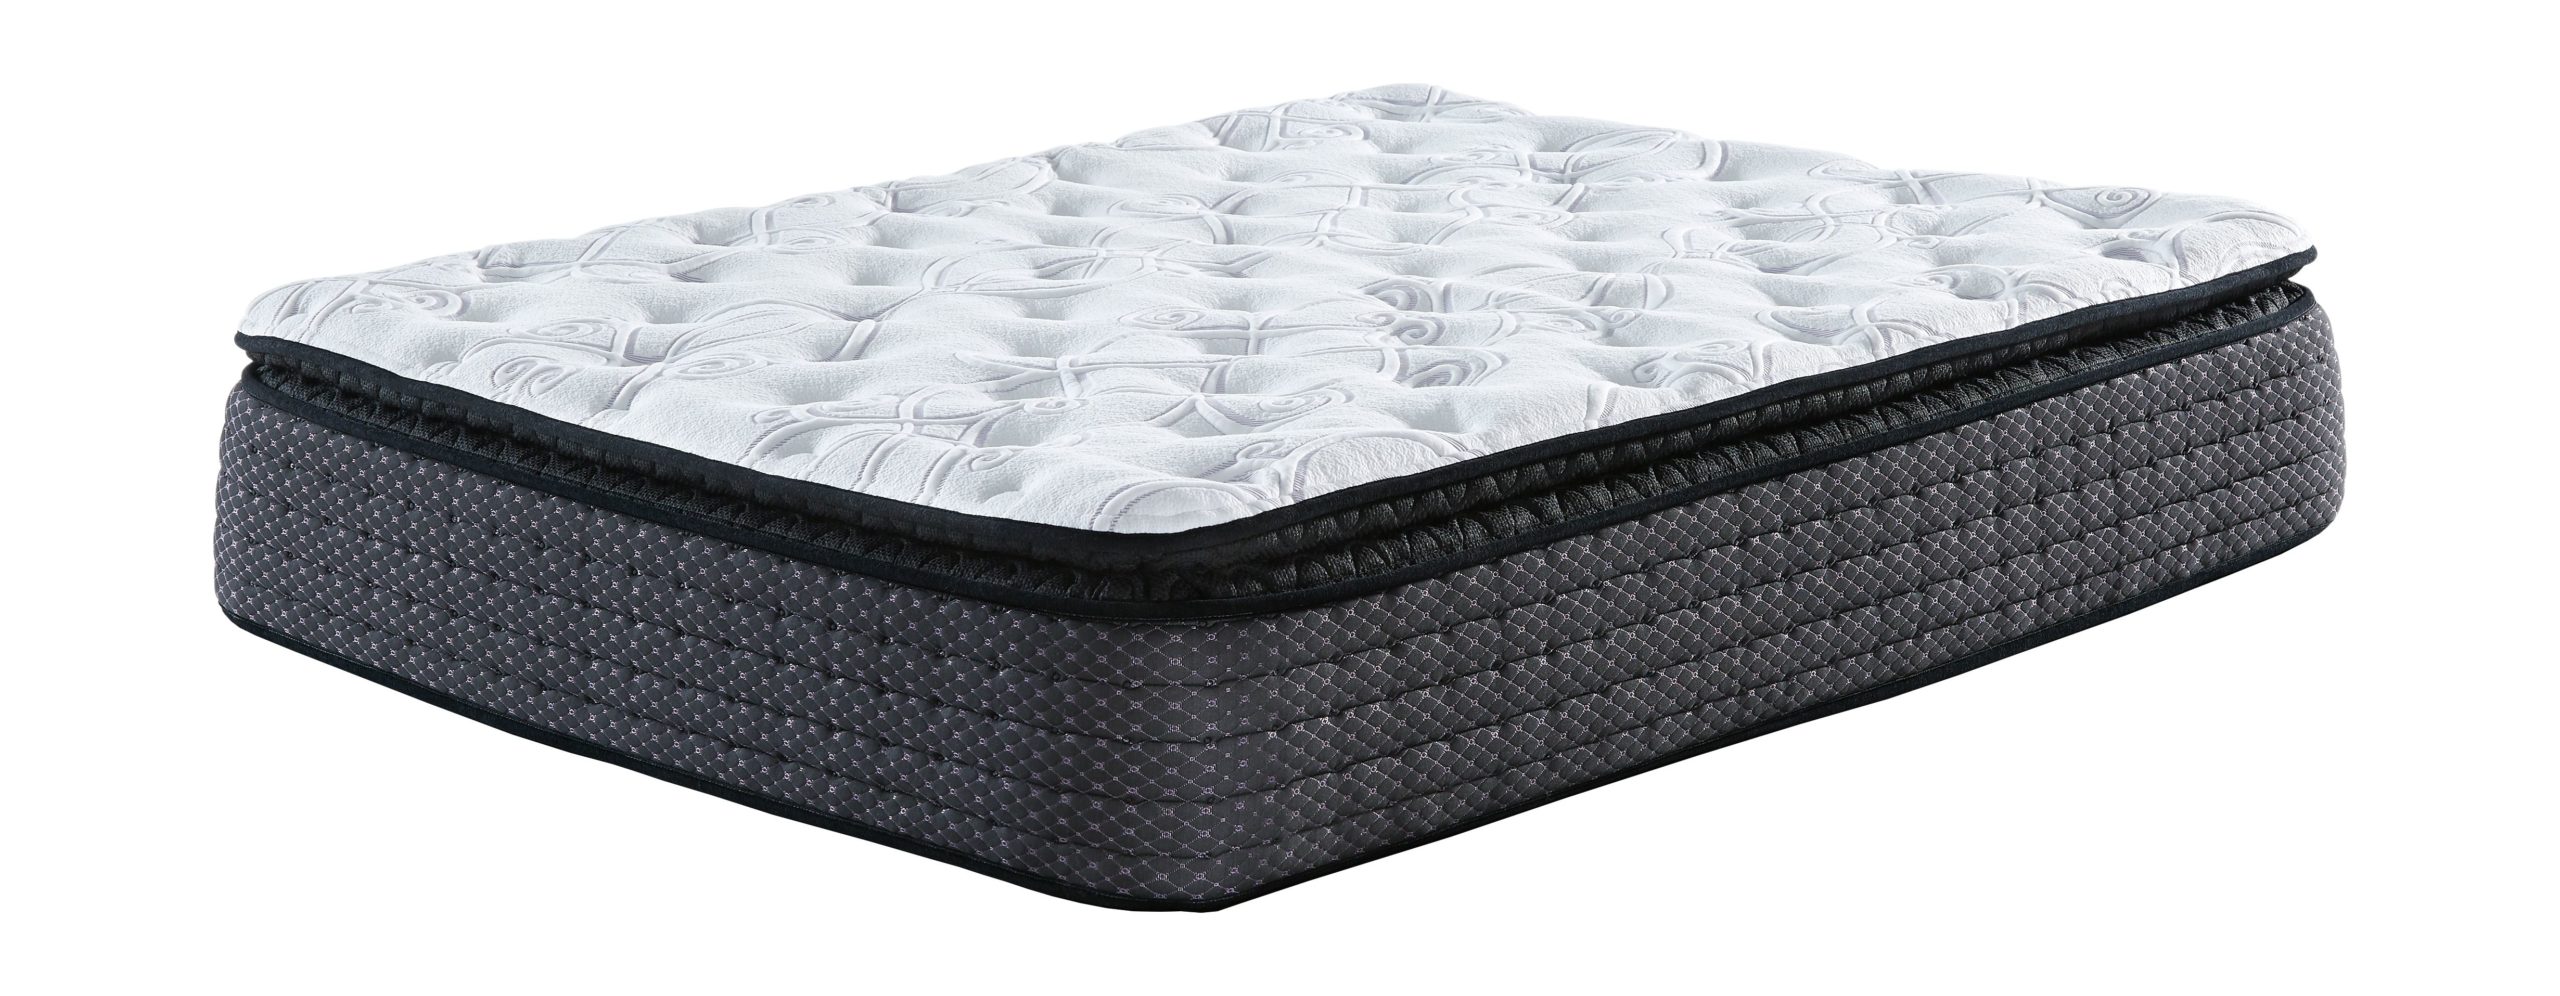 mattress standard firm upgraded pillowtop